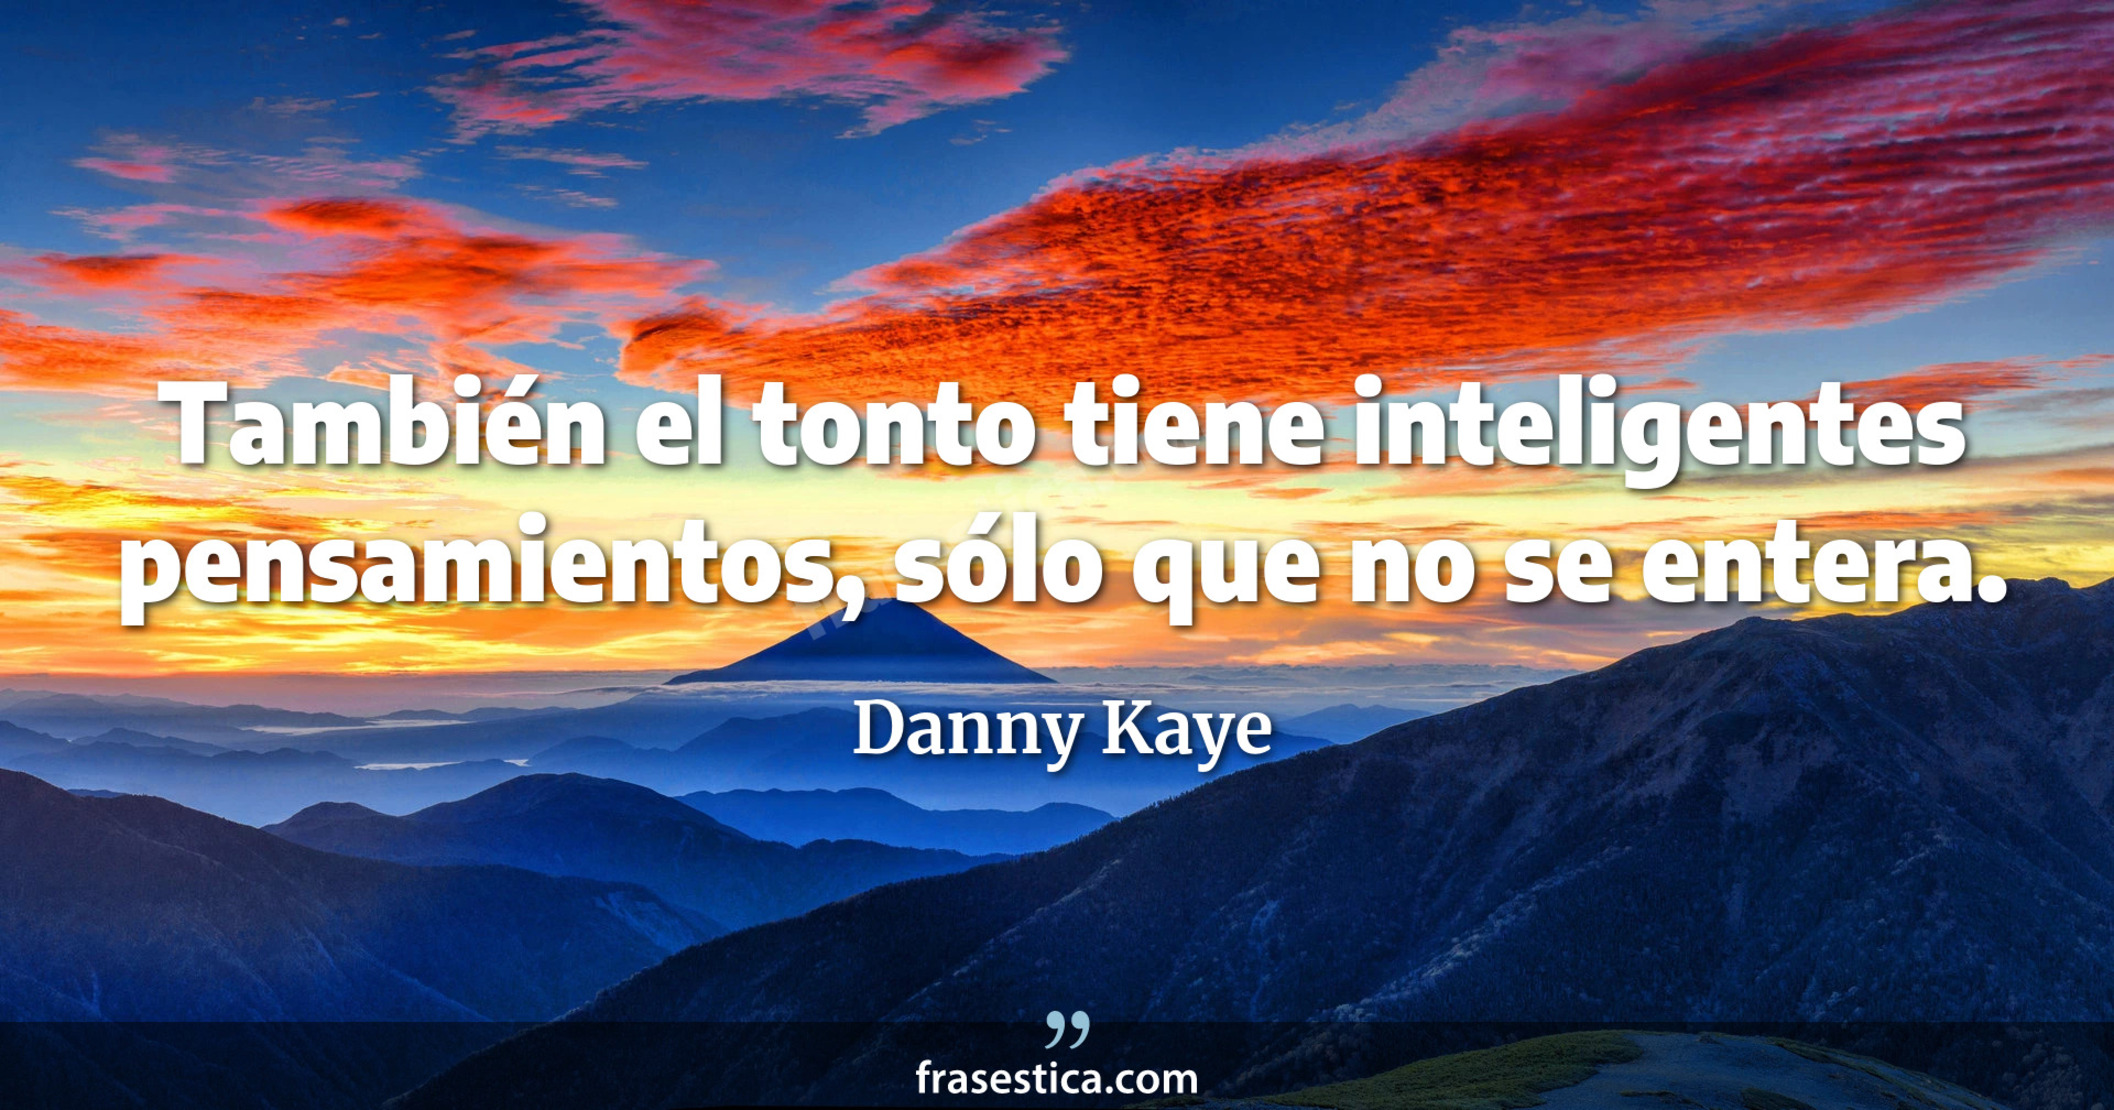 También el tonto tiene inteligentes pensamientos, sólo que no se entera. - Danny Kaye